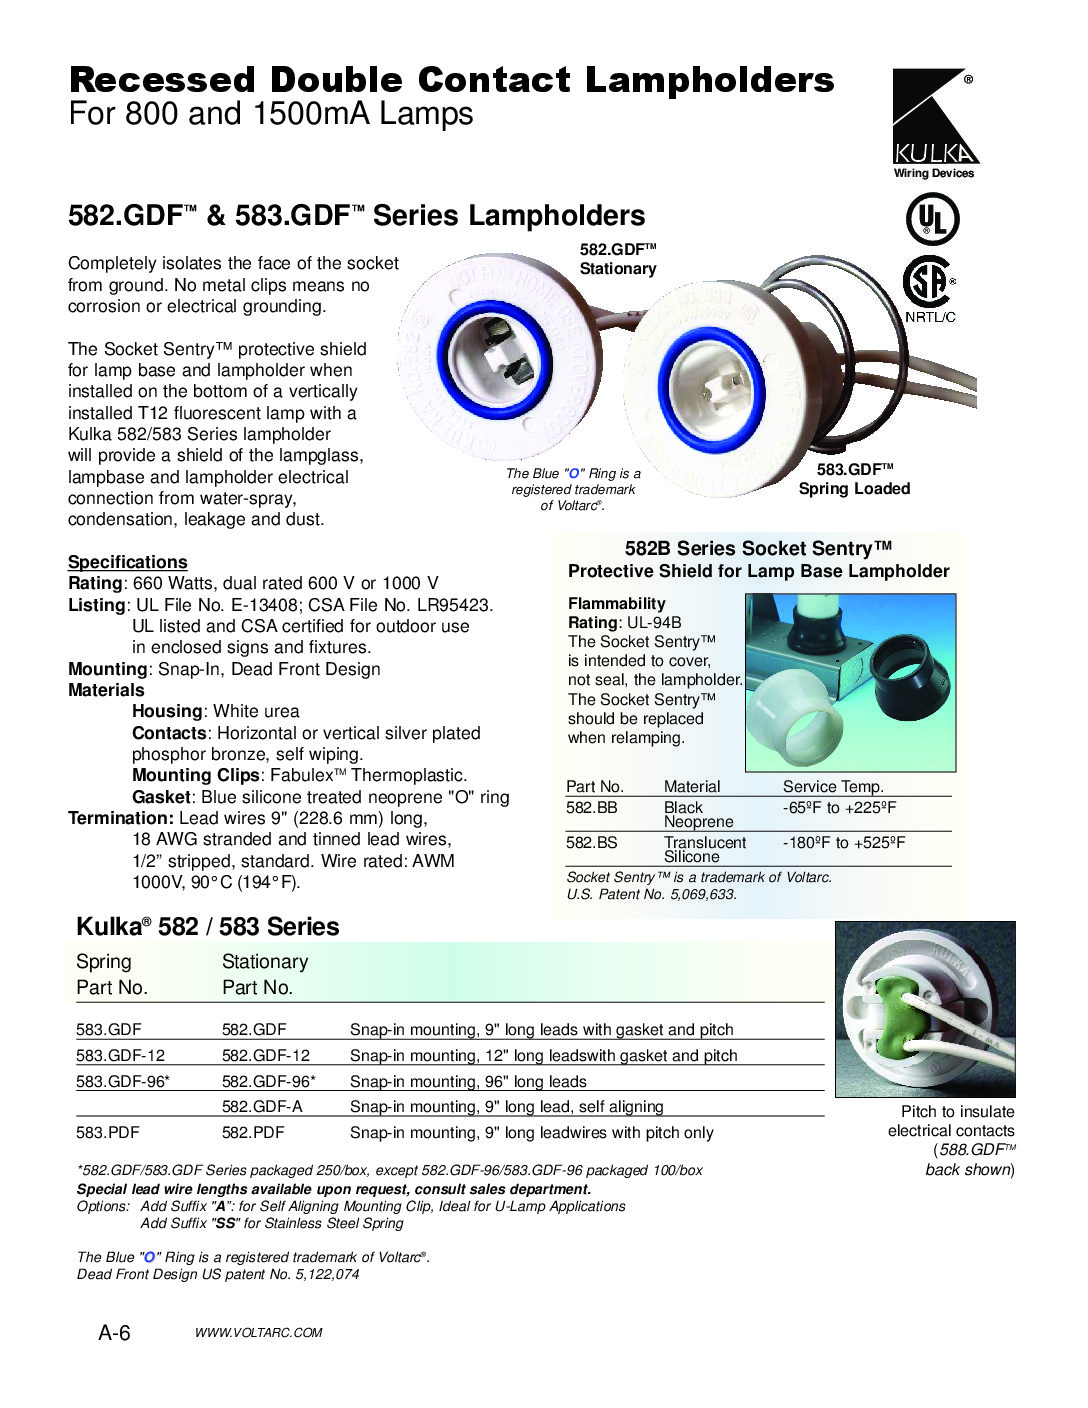 Fluorescent Double Contact HO T12 Sign Bulb FLAT “D” Sockets